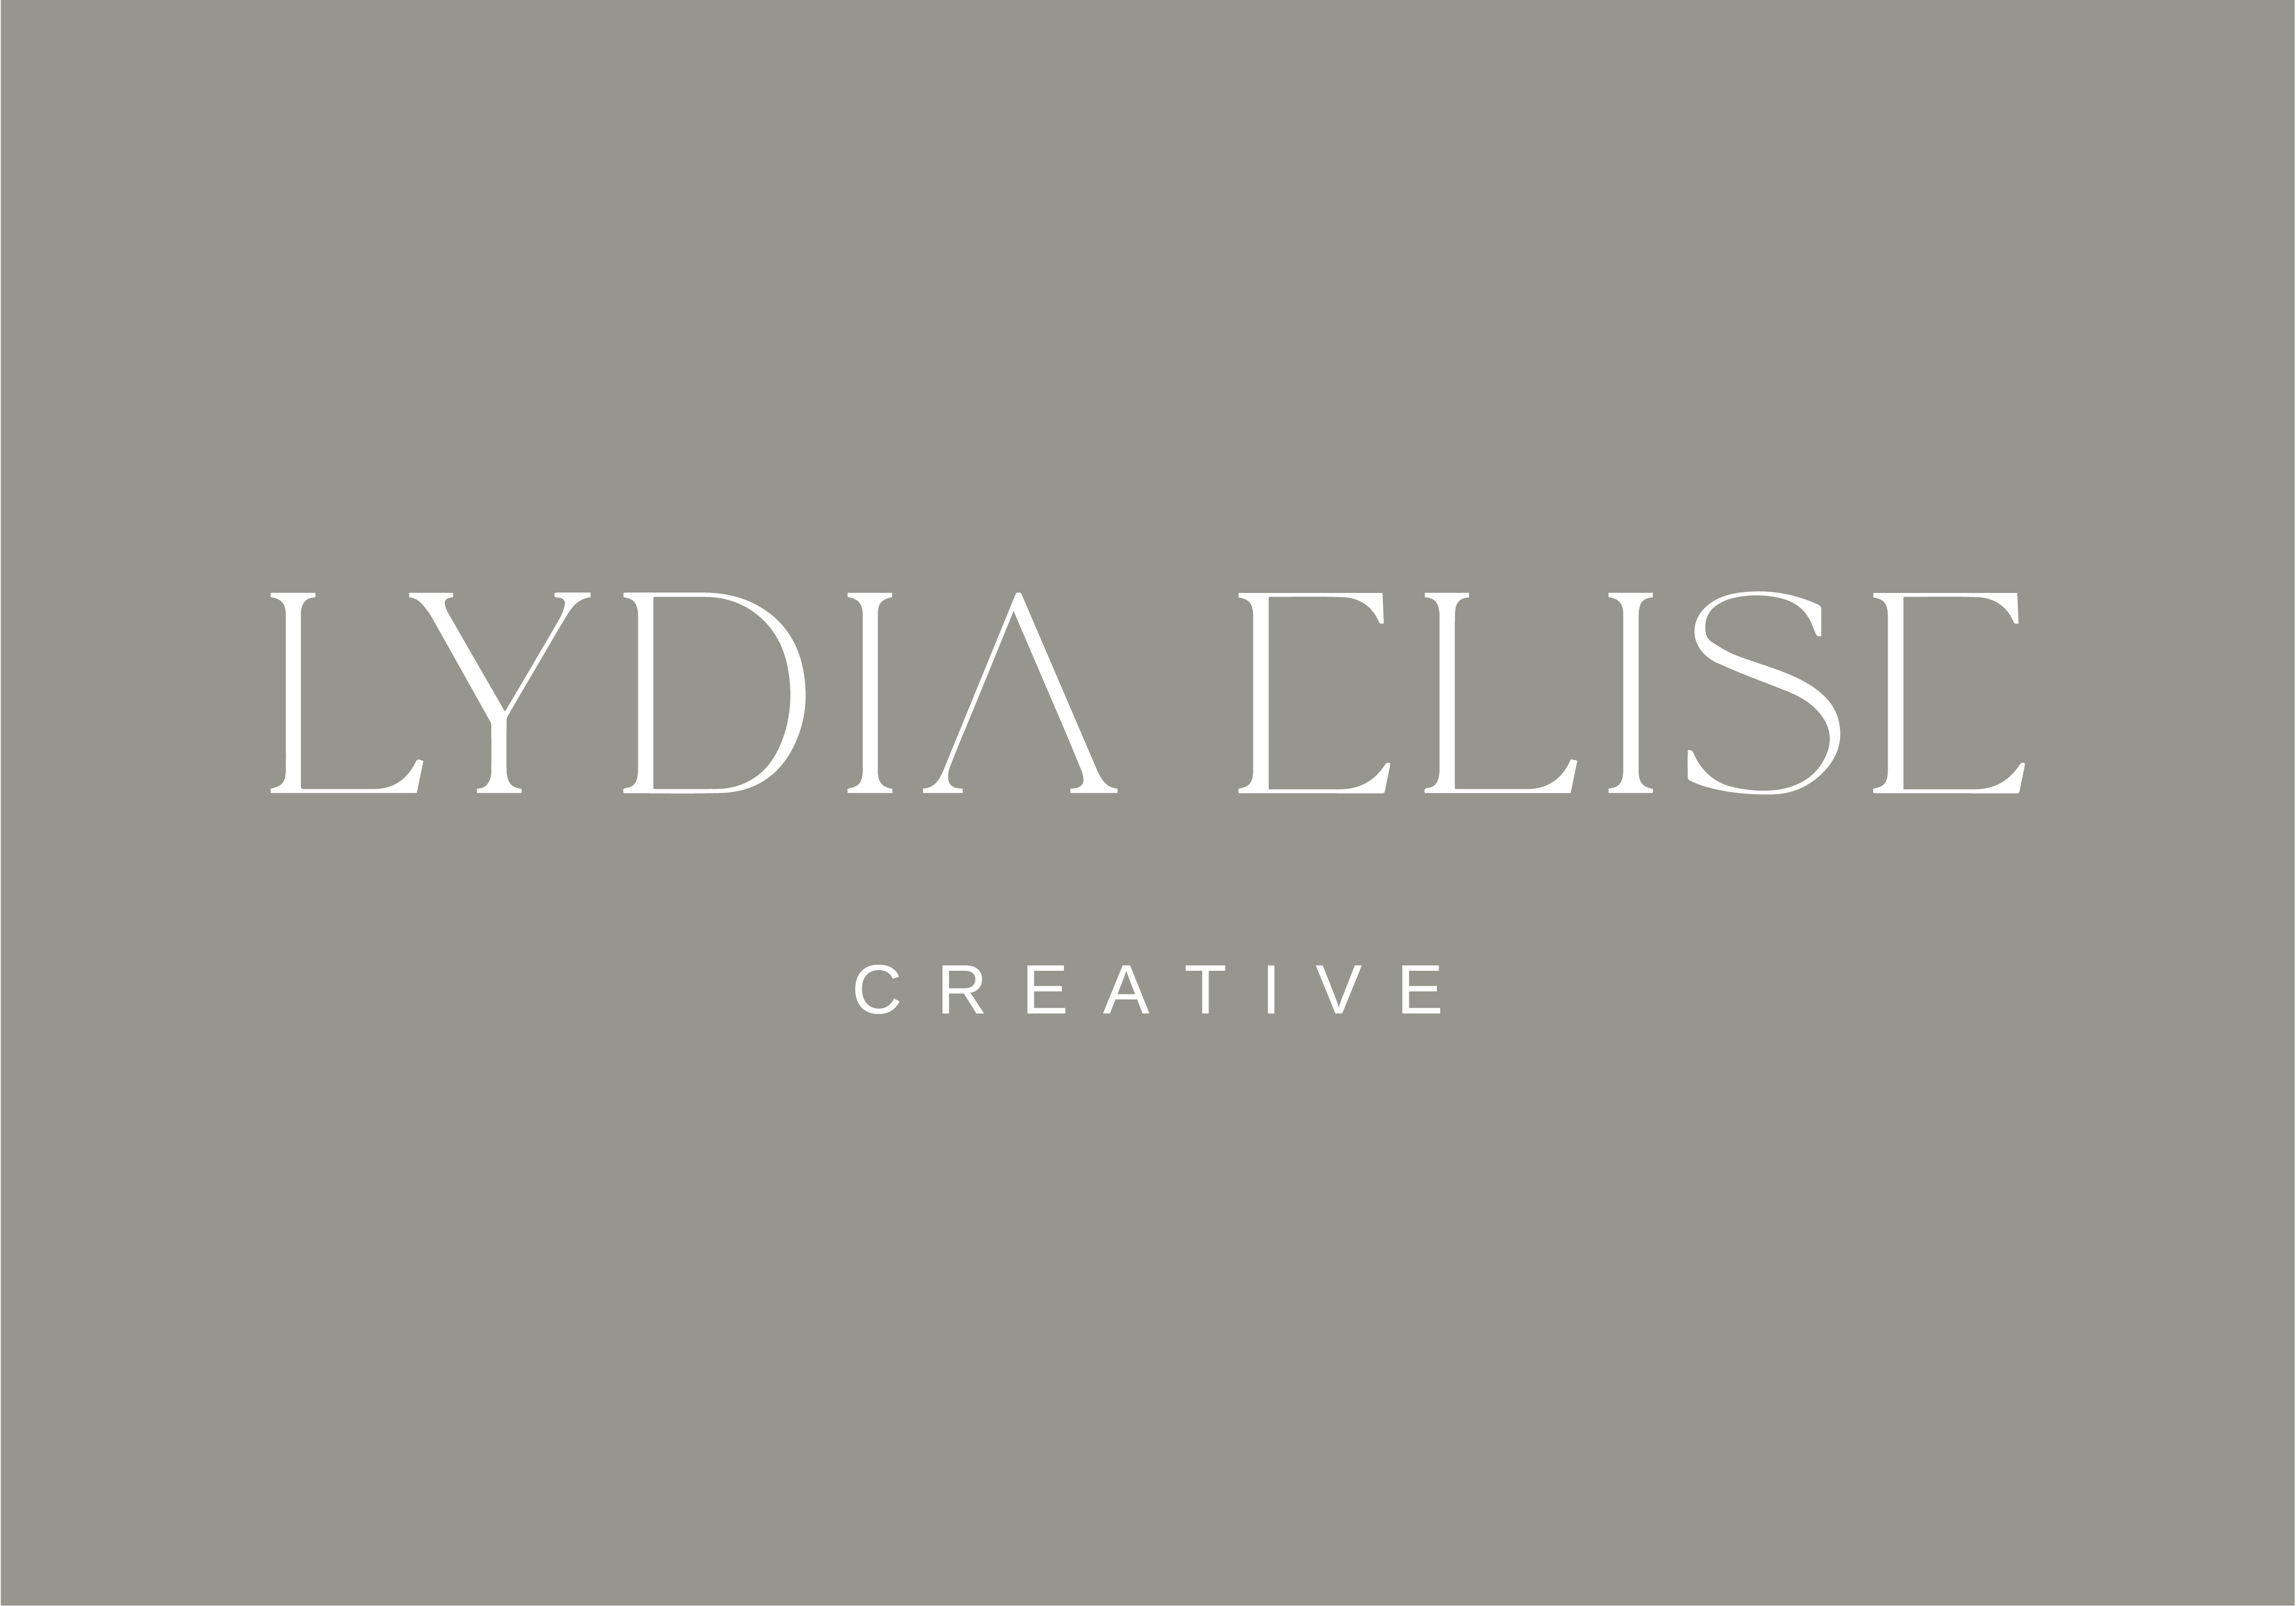 Lydia Elise Creative logo